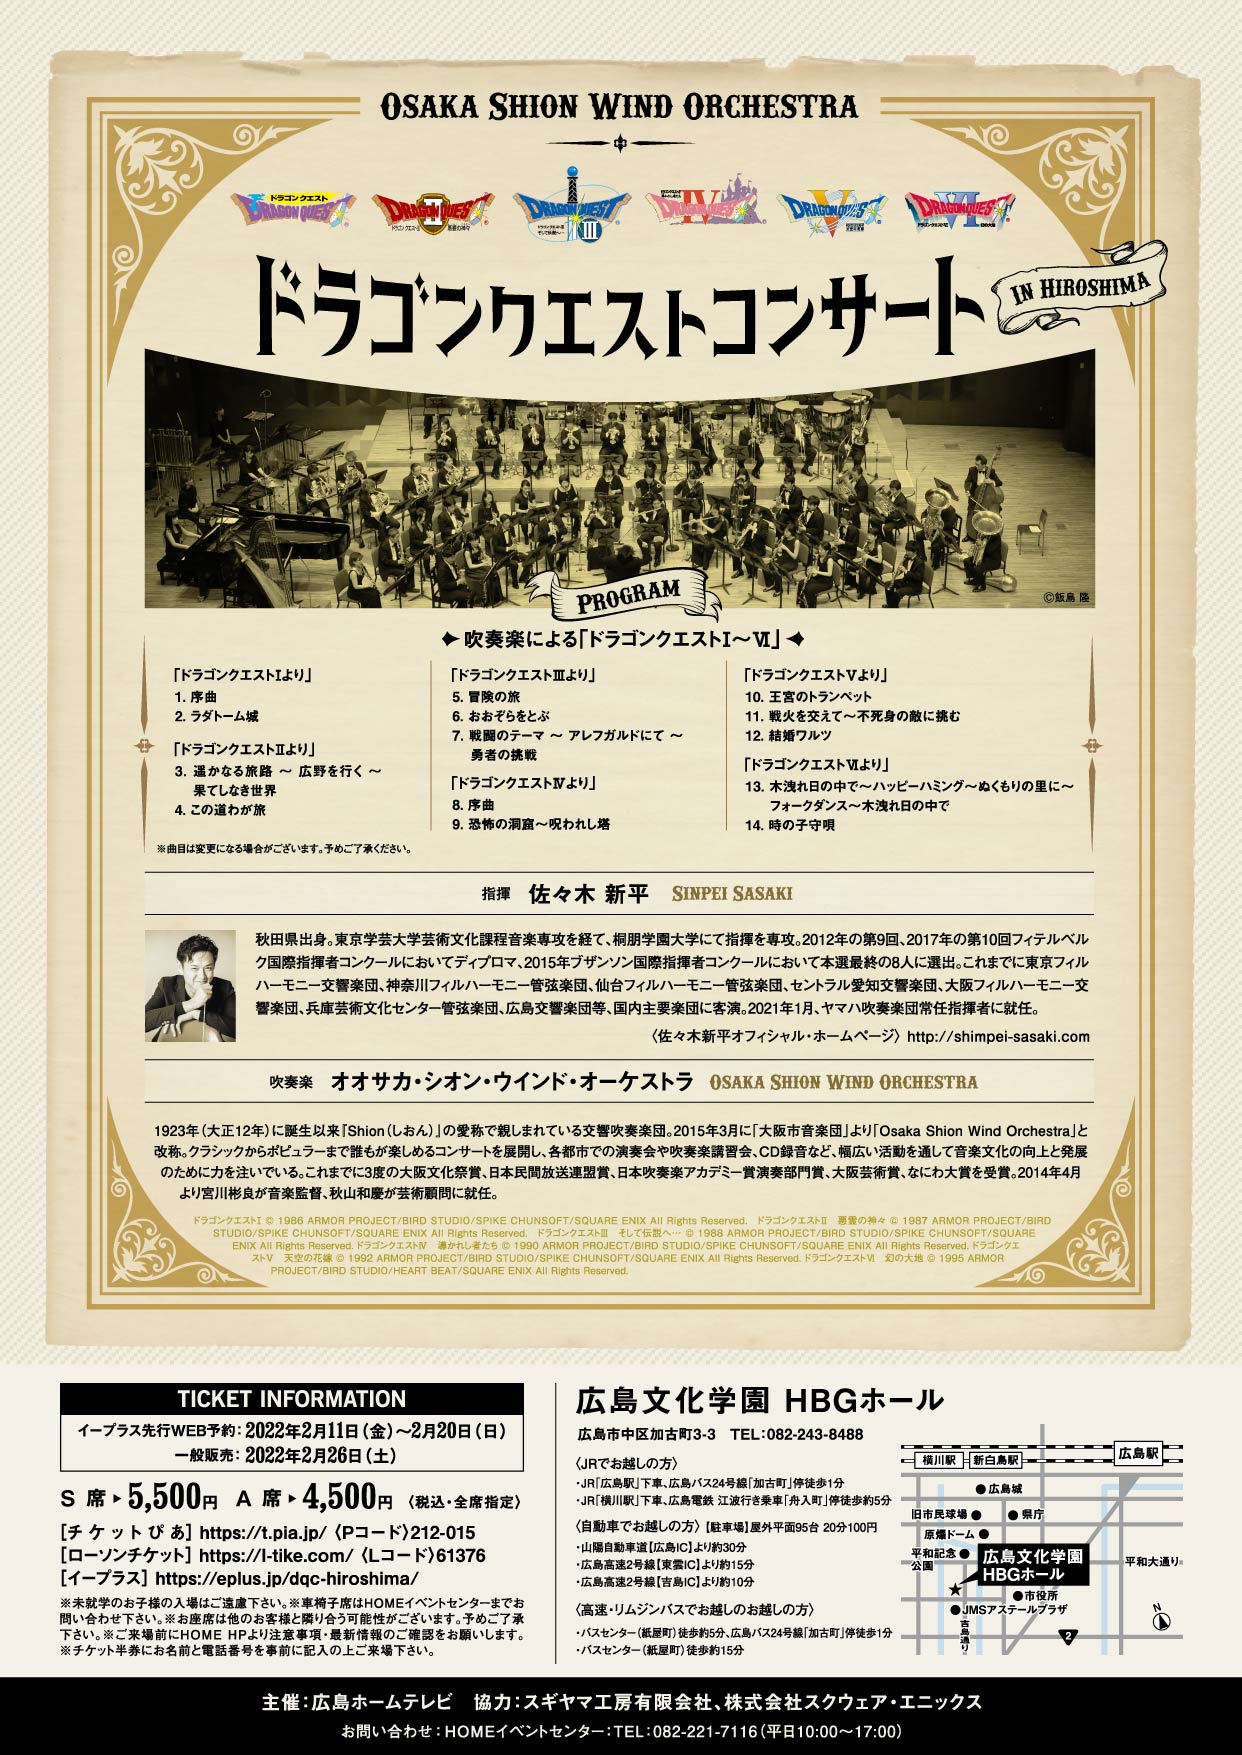 ドラゴンクエストコンサート In 広島 コンサート情報 Osaka Shion Wind Orchestra 大阪市音楽団